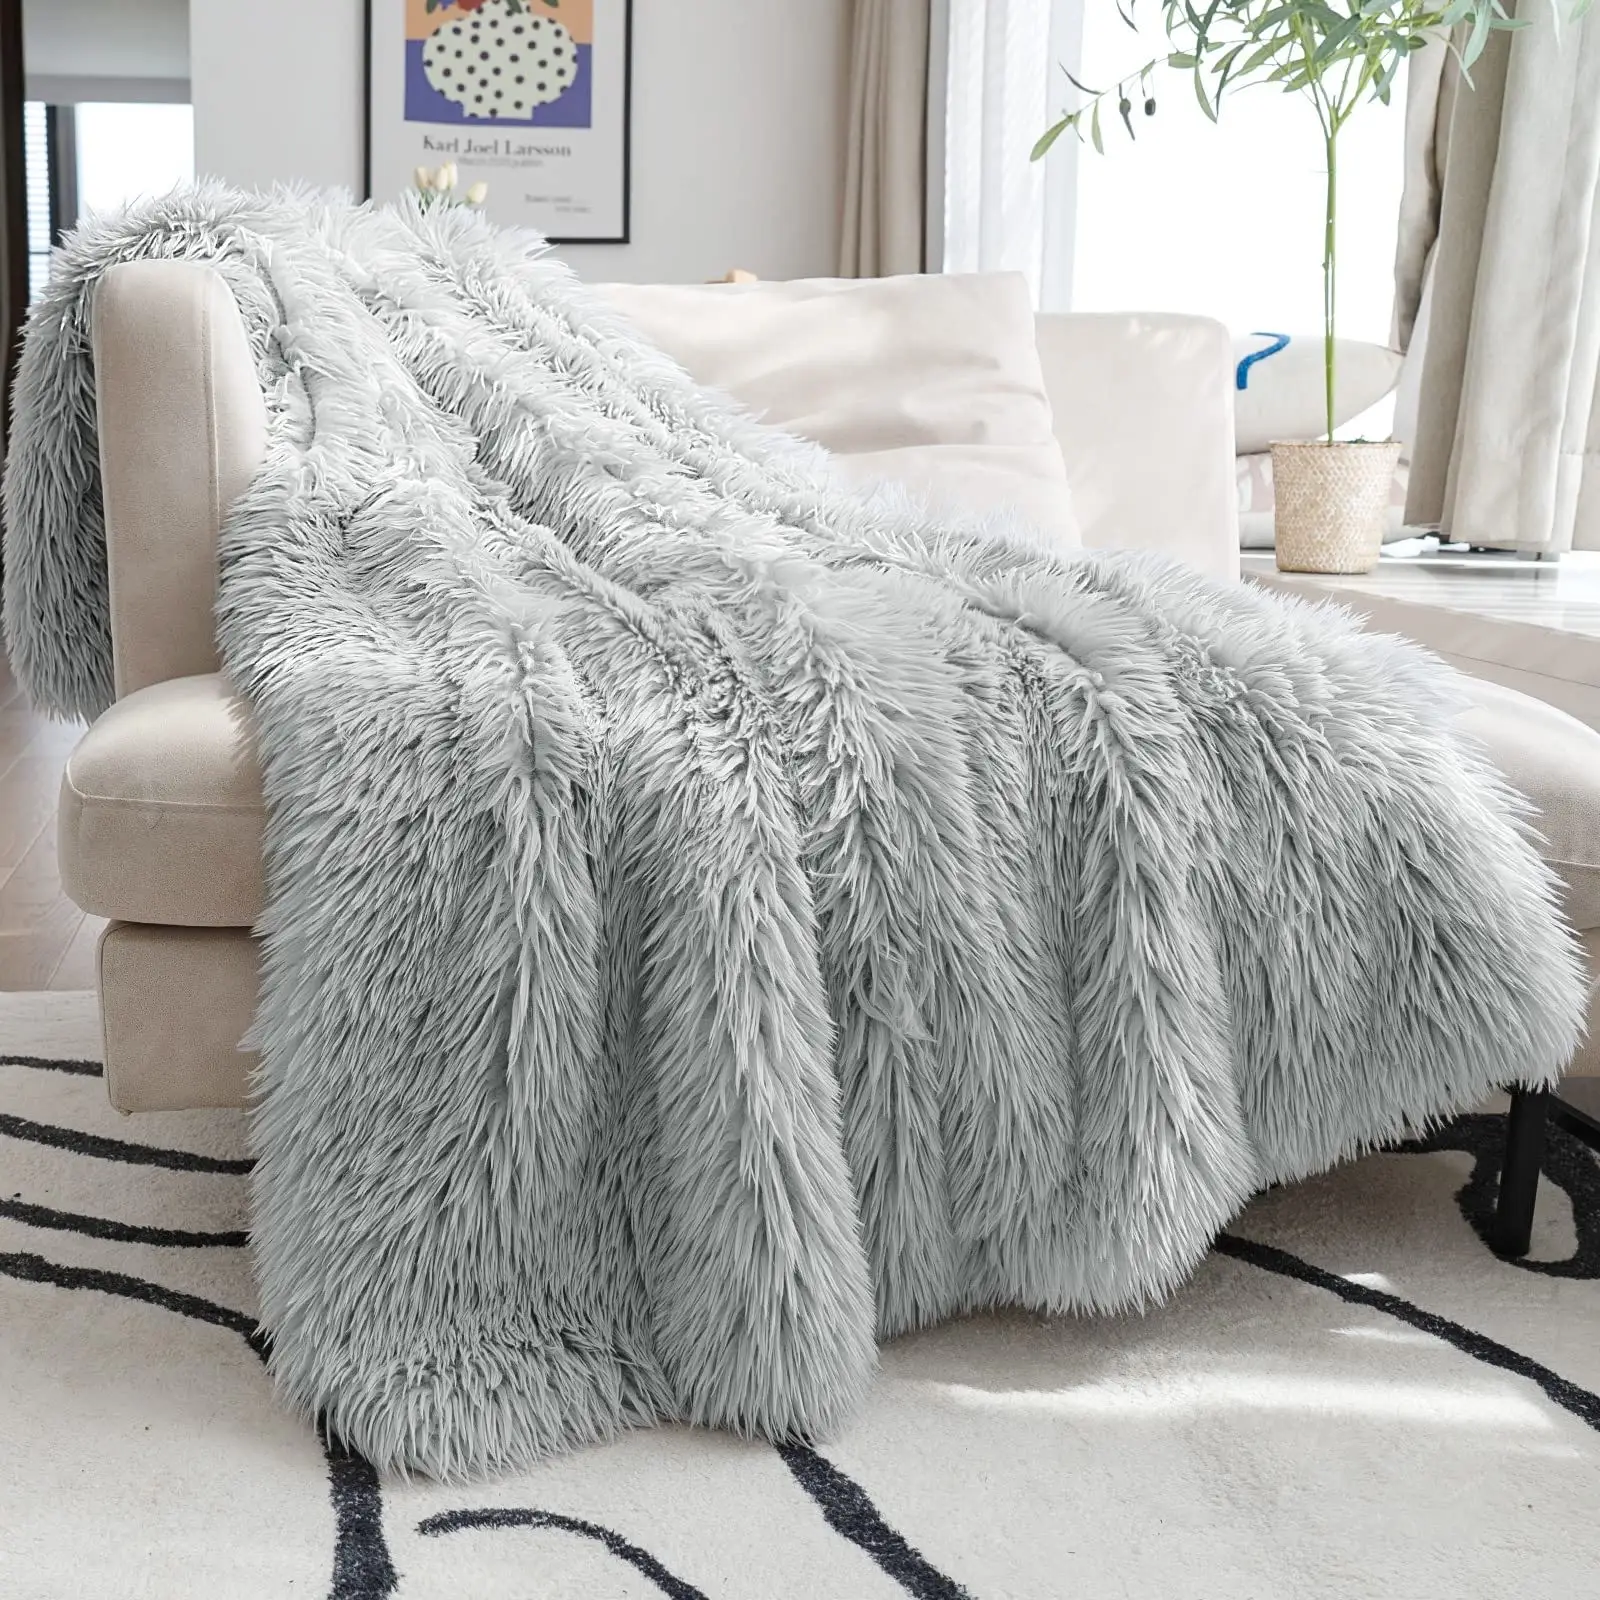 Custom Designer Hug Sleep Double Sided Crystal Velvet Winter Dog Sofa Korean Luxury Picnic Pet Bed Throw Baby Blanket